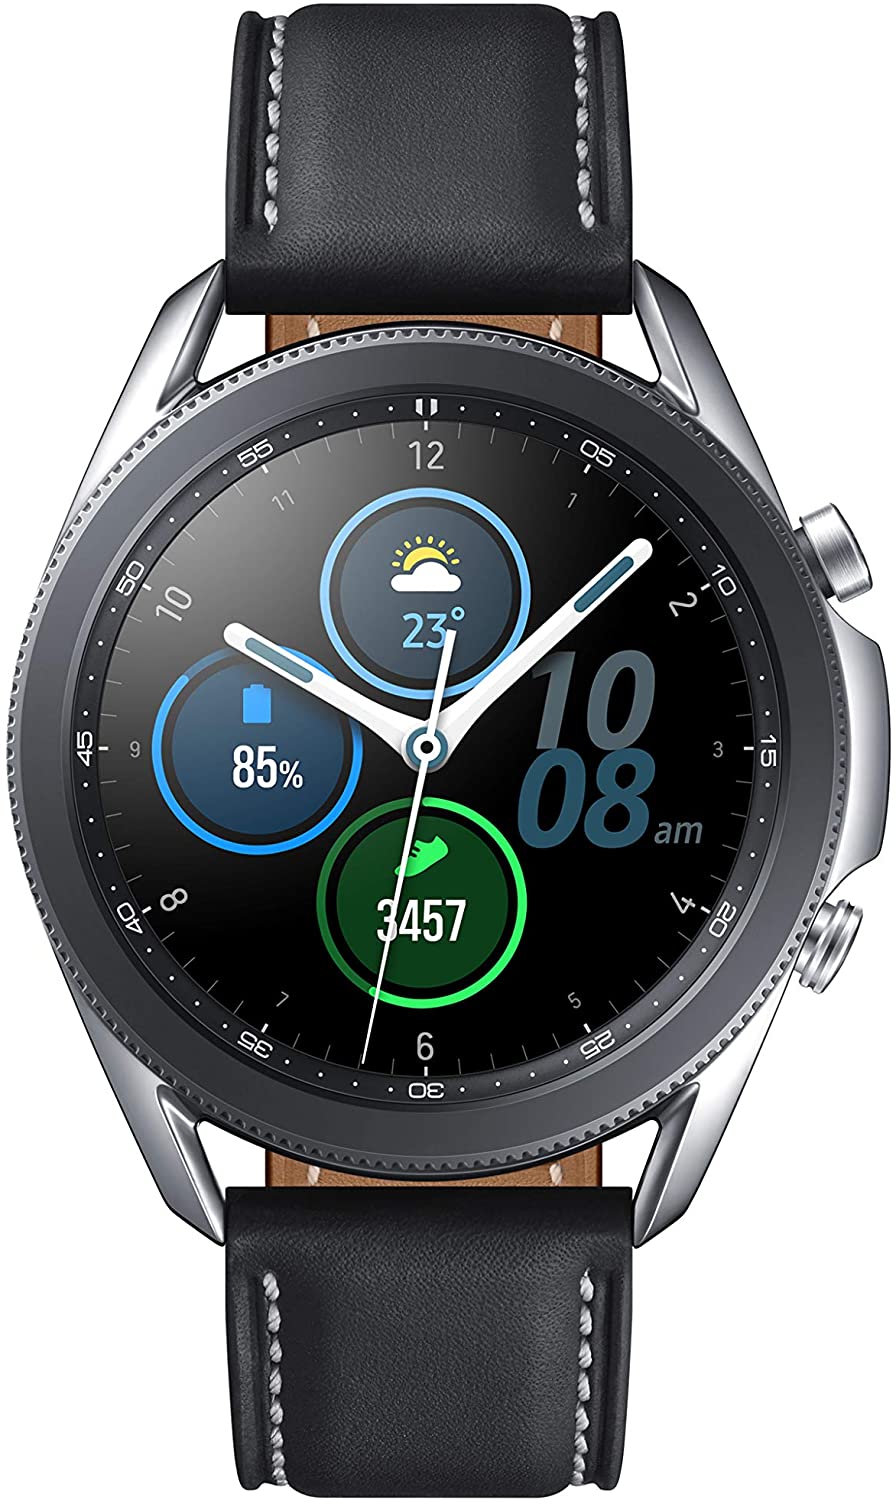 Reloj inteligente SAMSUNG Galaxy Watch 3 (41 mm, GPS, Bluetooth) con estado avanzado Monitorización, seguimiento del estado físico y batería de larga duración-Mystic Silver